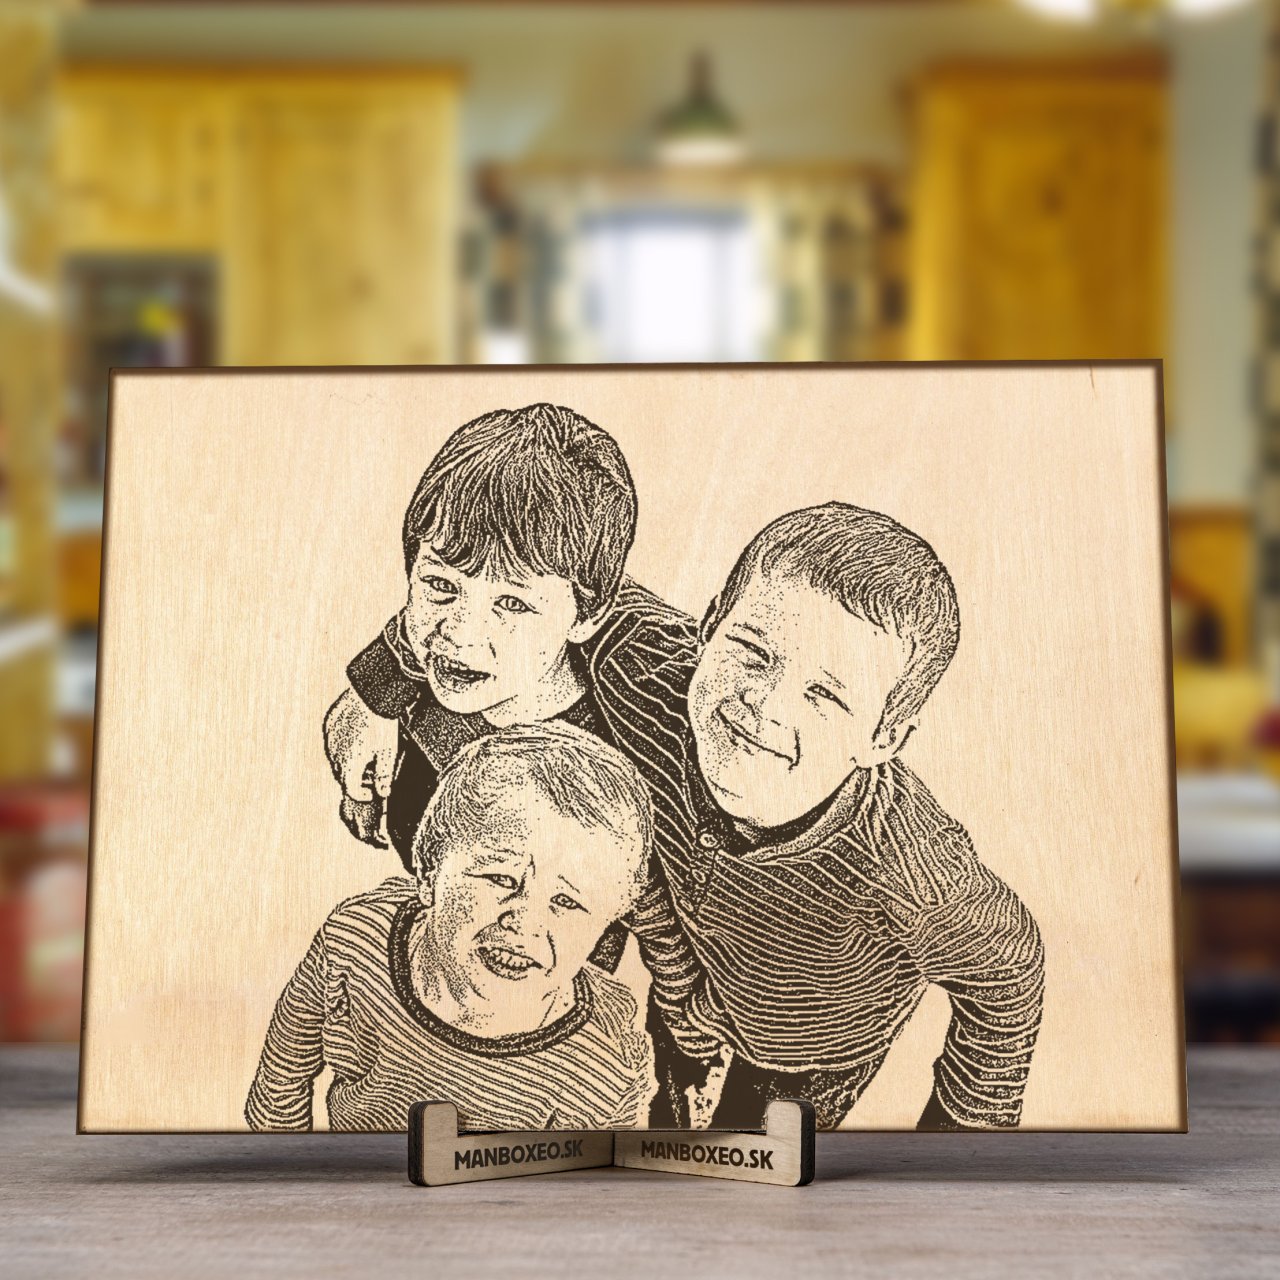 Fotka na dřevo - Děti A4 (220 x 310 mm)